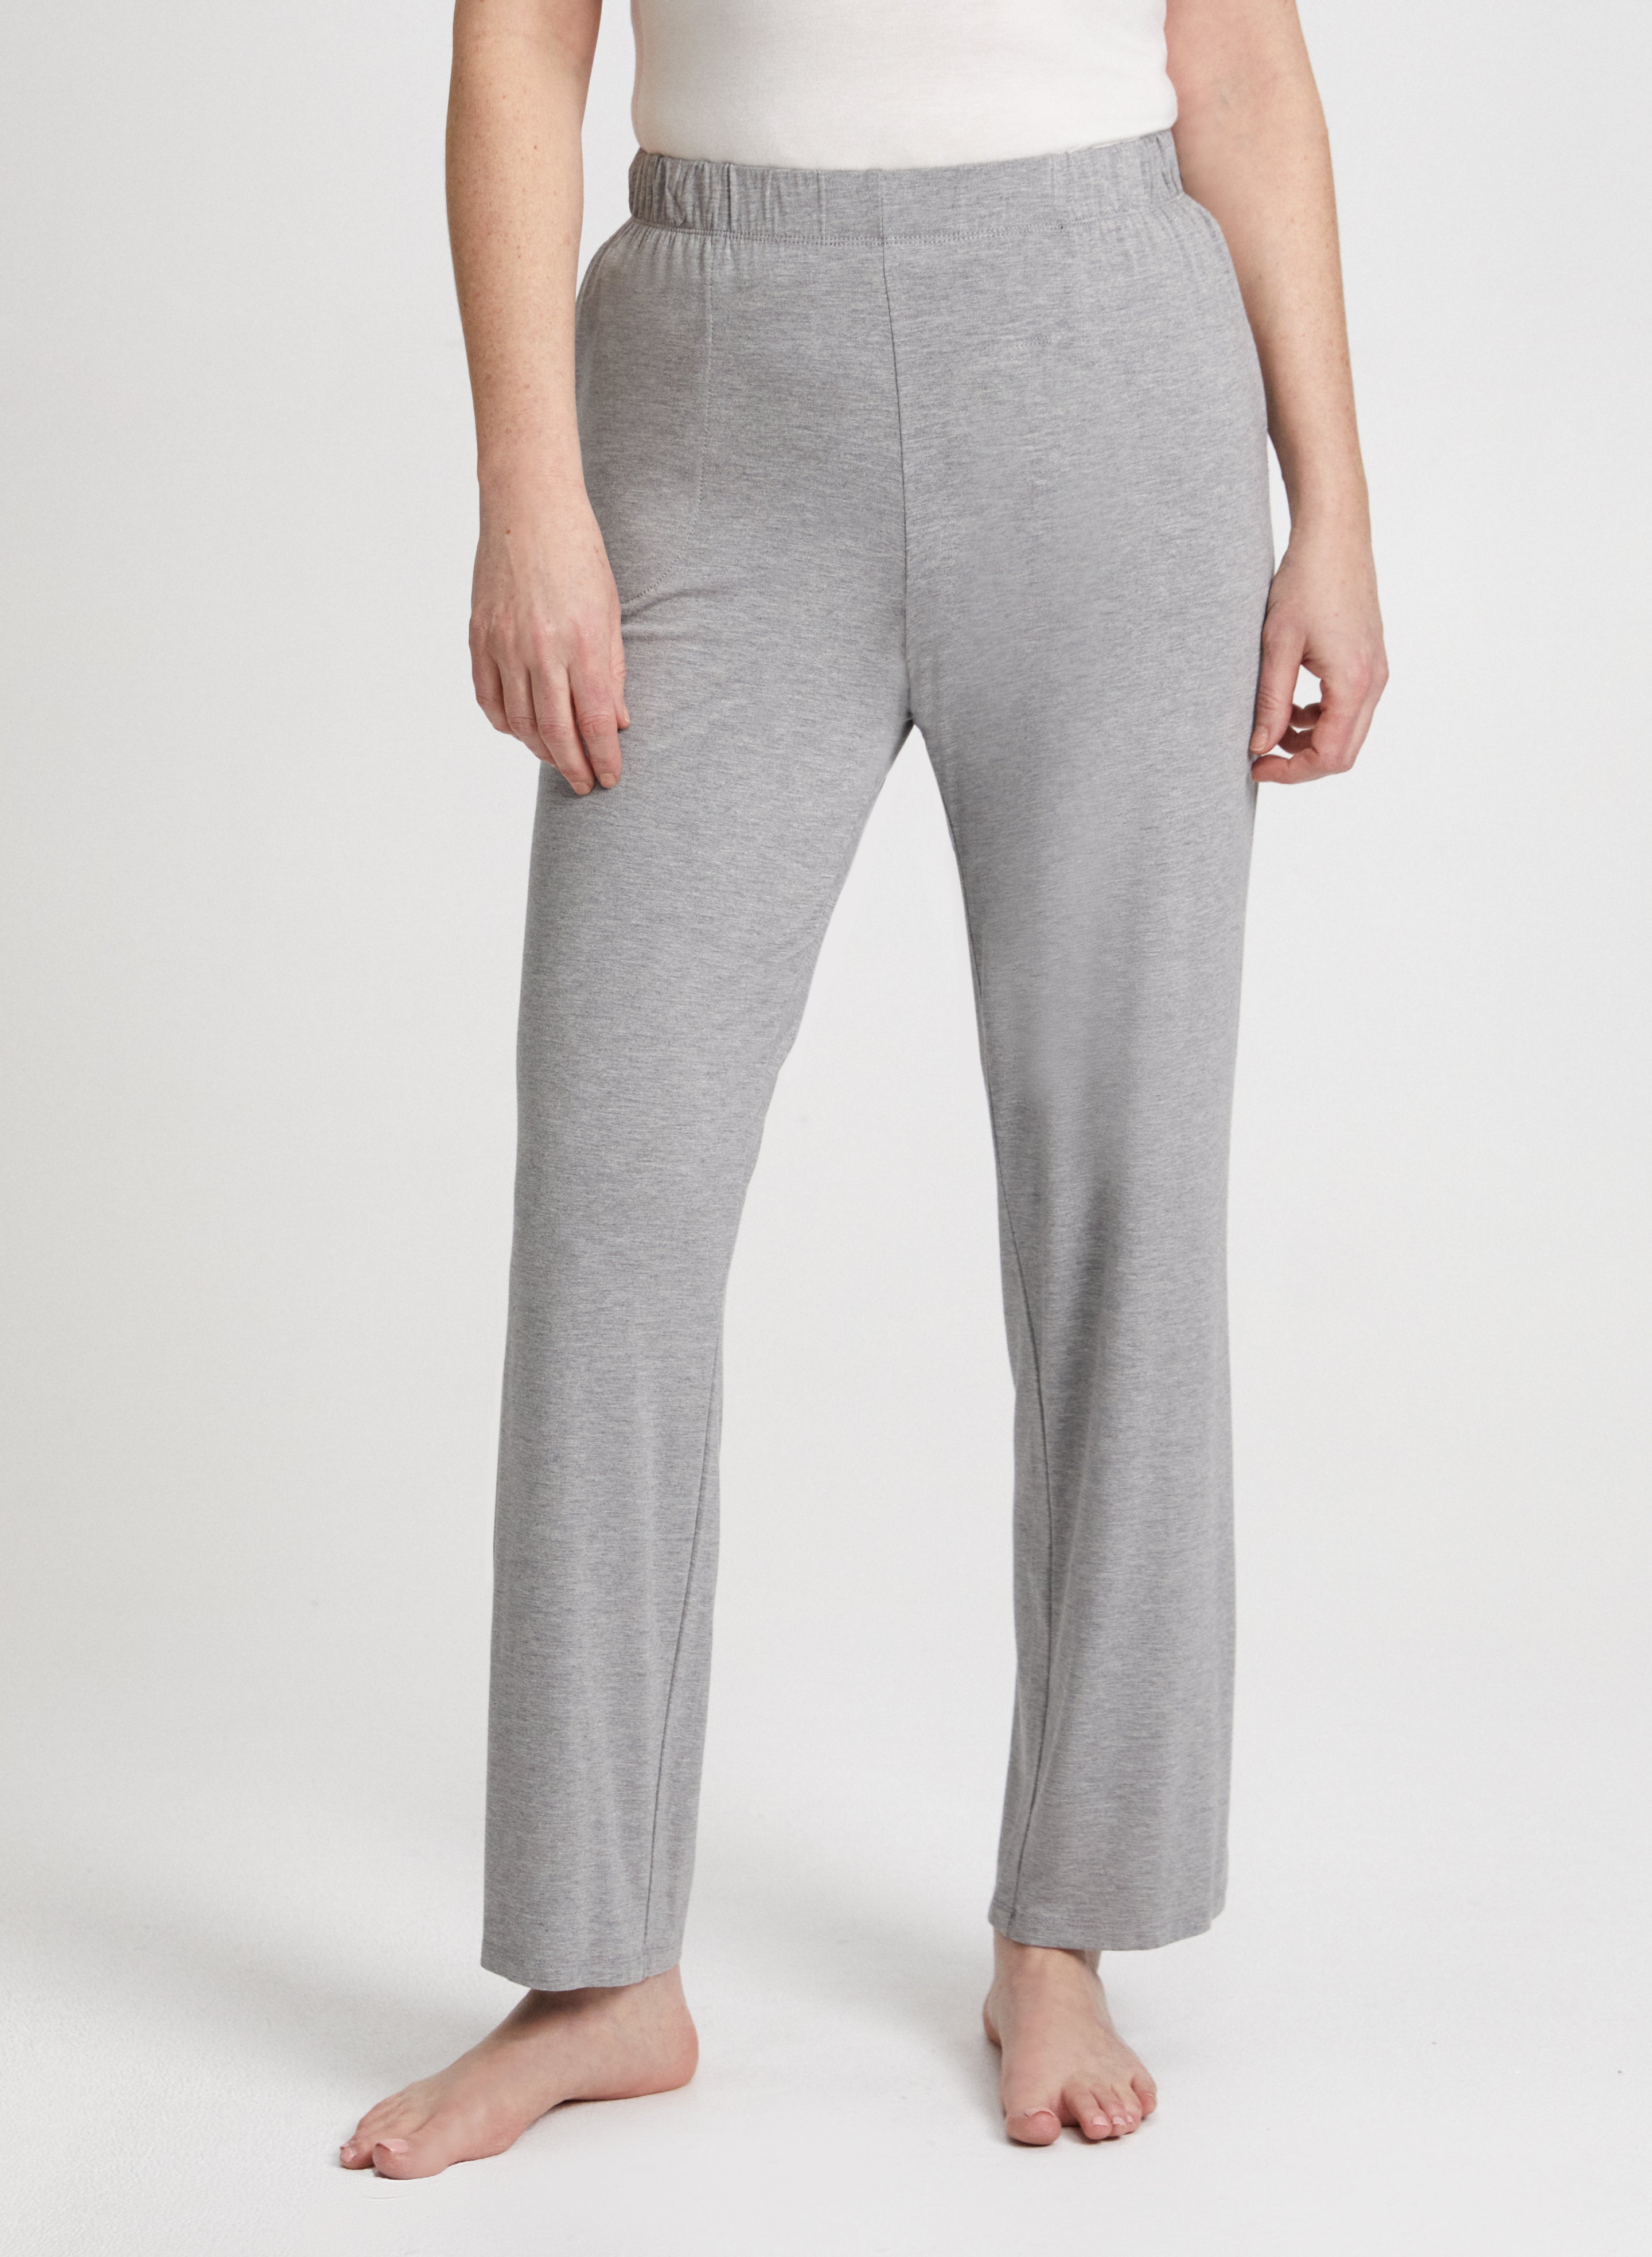 Pyjama Pants With Pockets